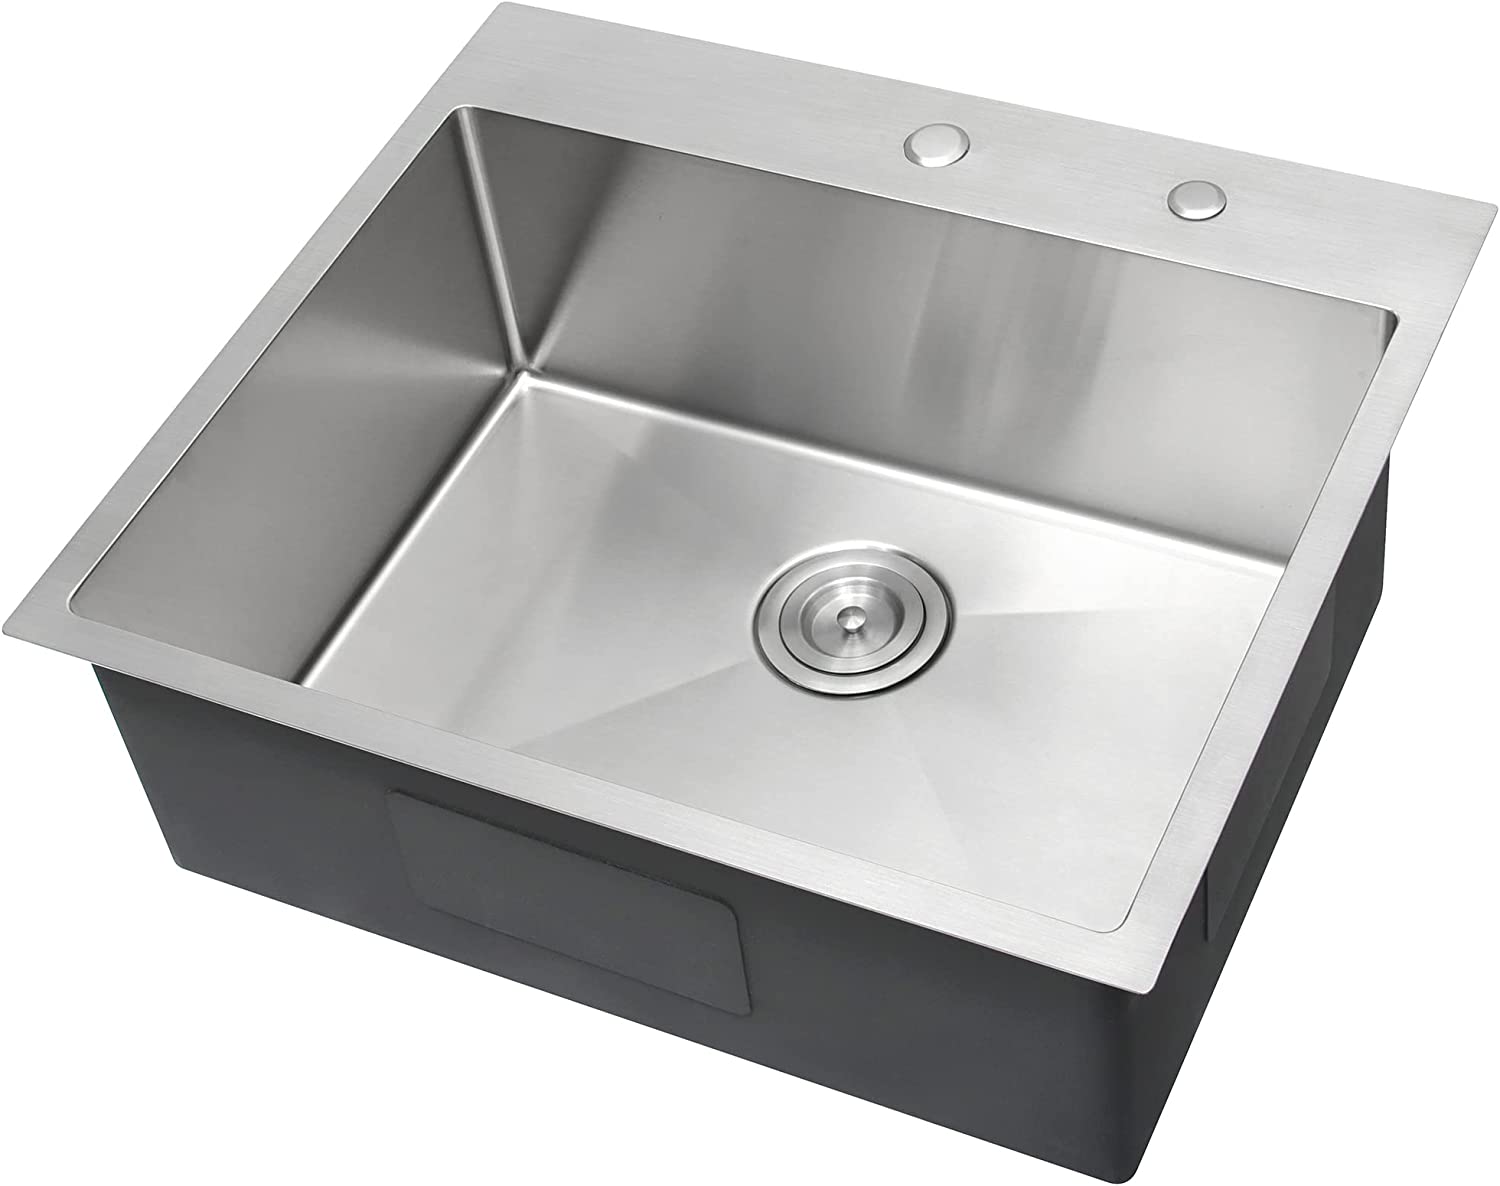 25x22 2 bowl kitchen sink